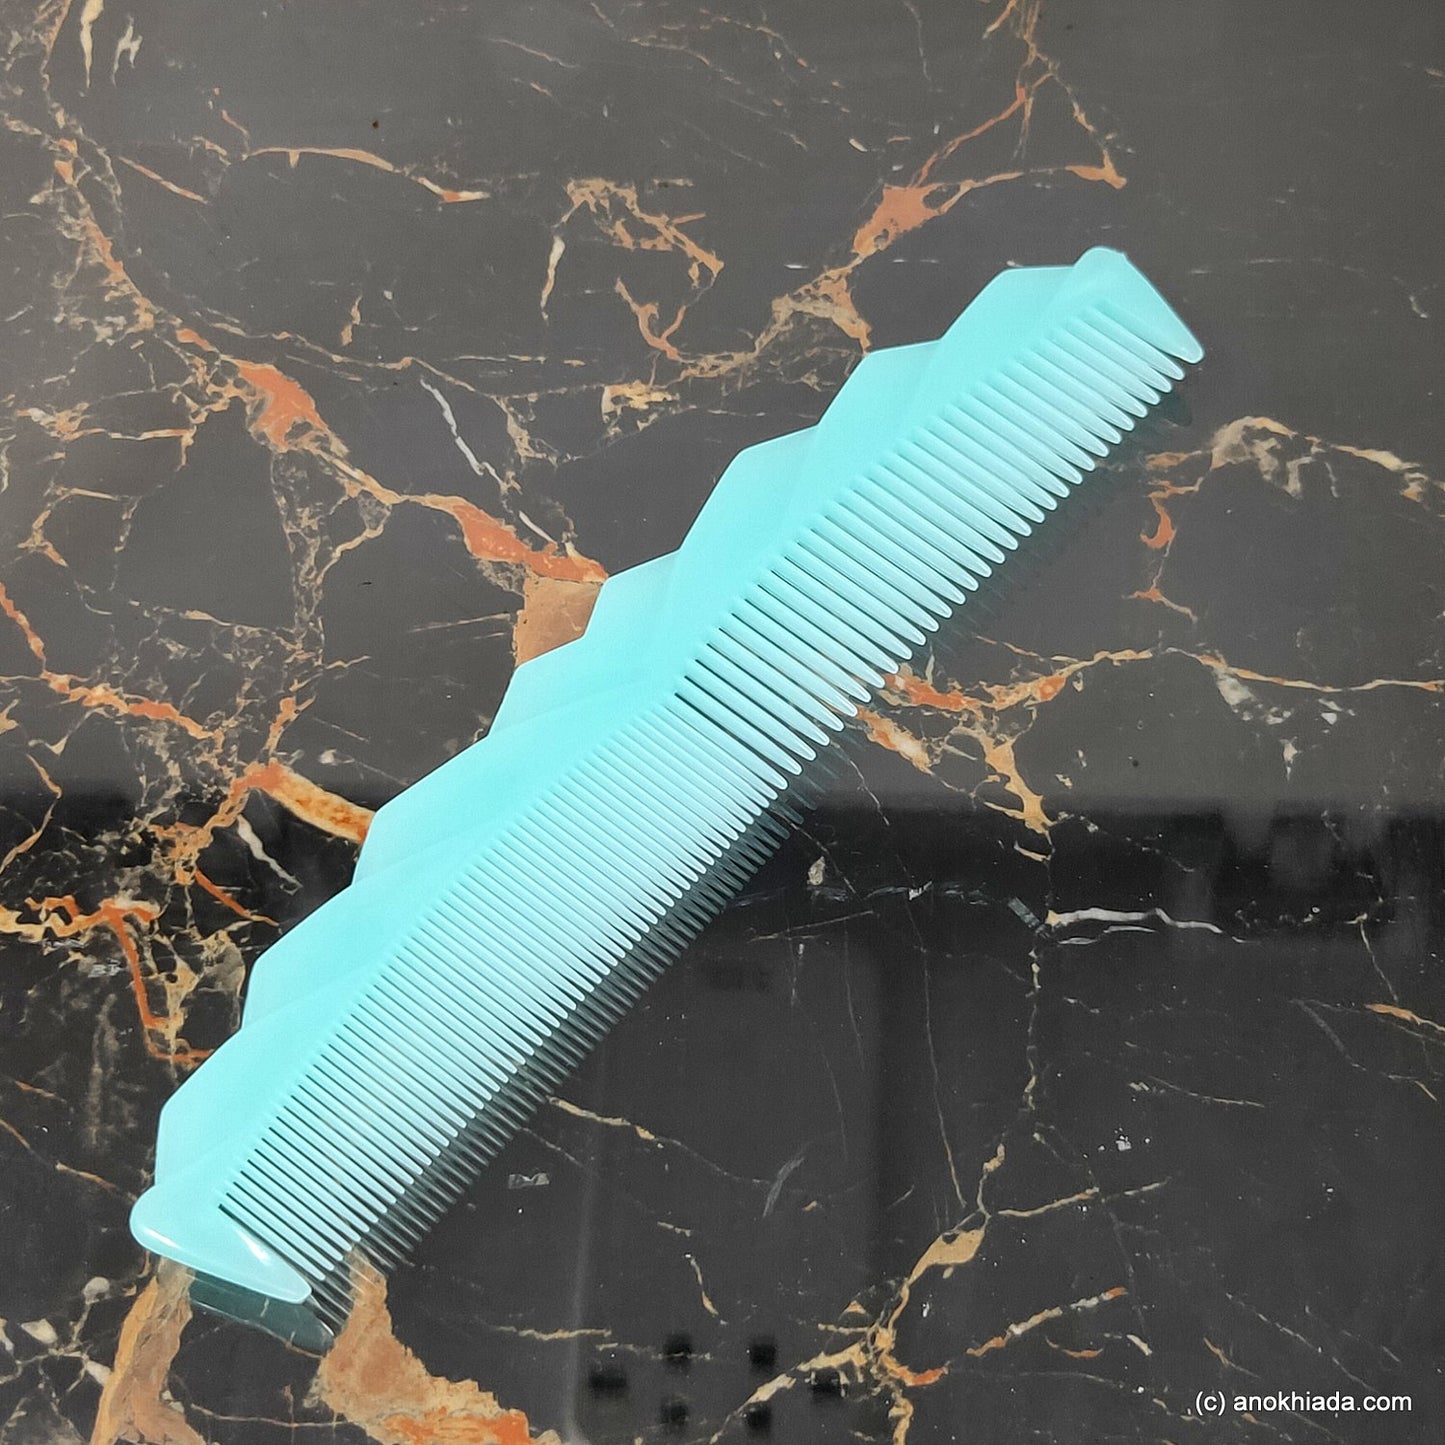 Anokhi Ada Plastic Translucent Comb, 9-inch, Green (Comb-041)